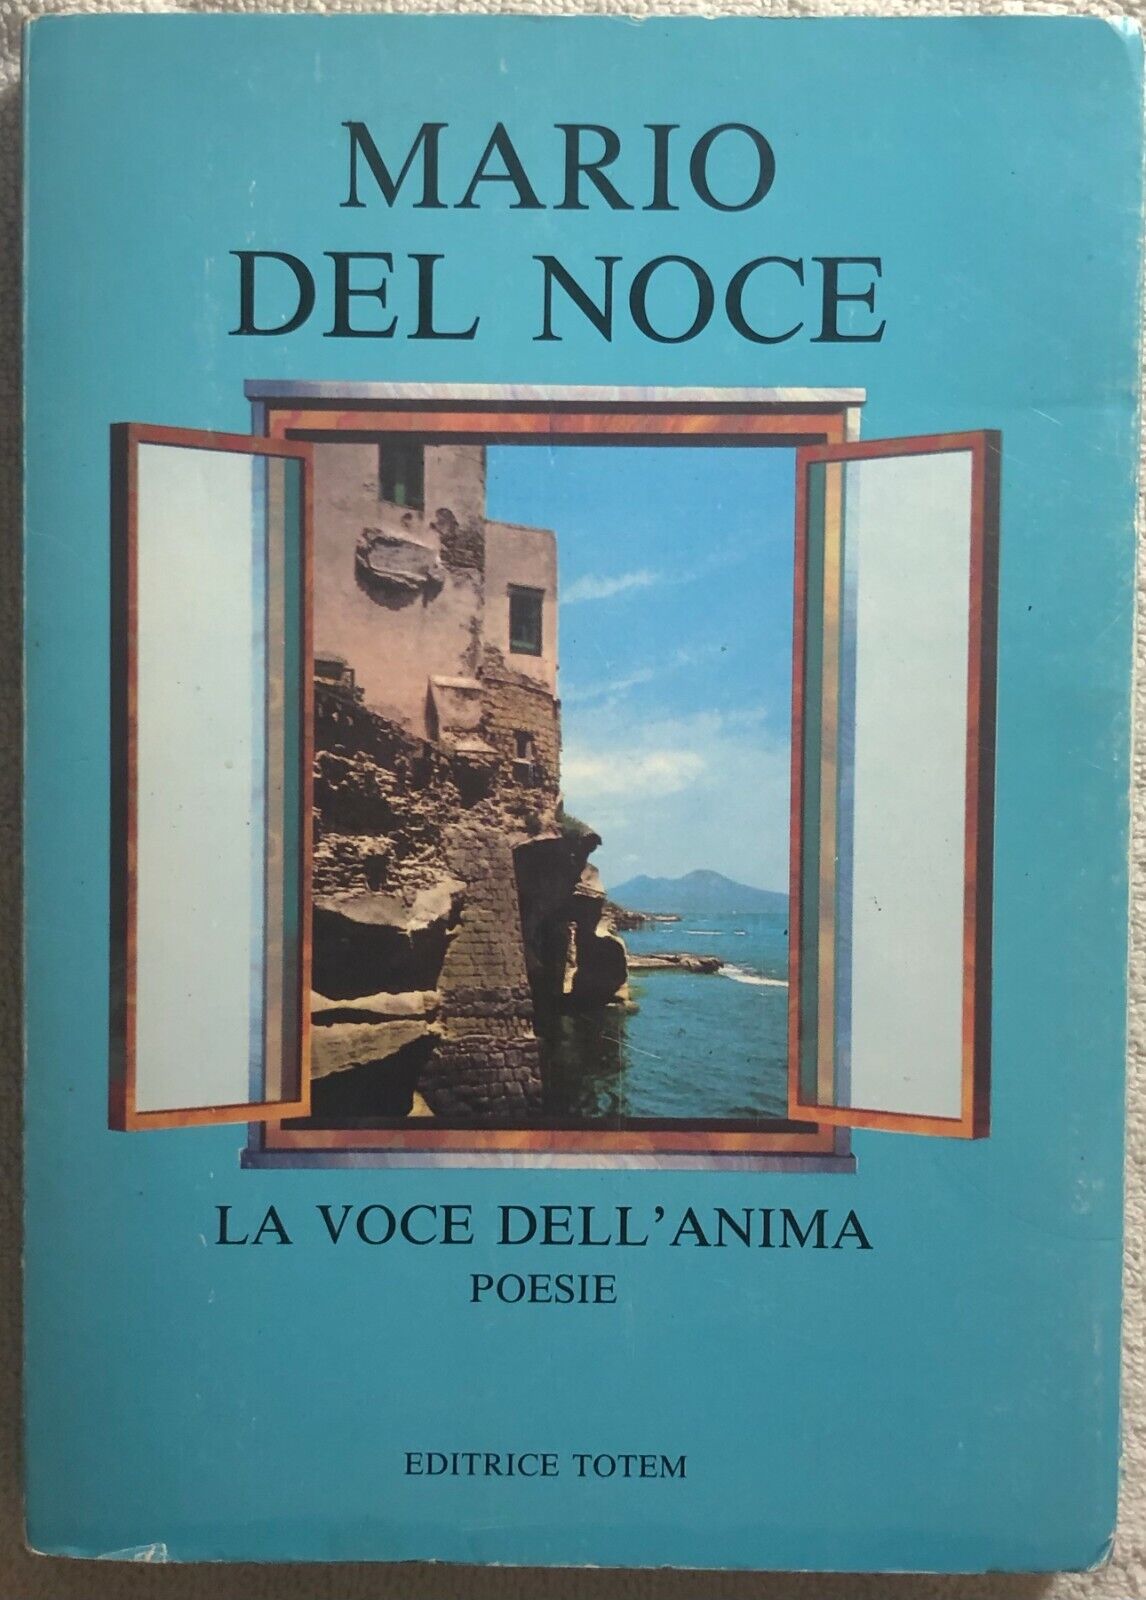 La voce delL'anima - Poesie di Mario Del Noce,  1994,  Editrice Totem